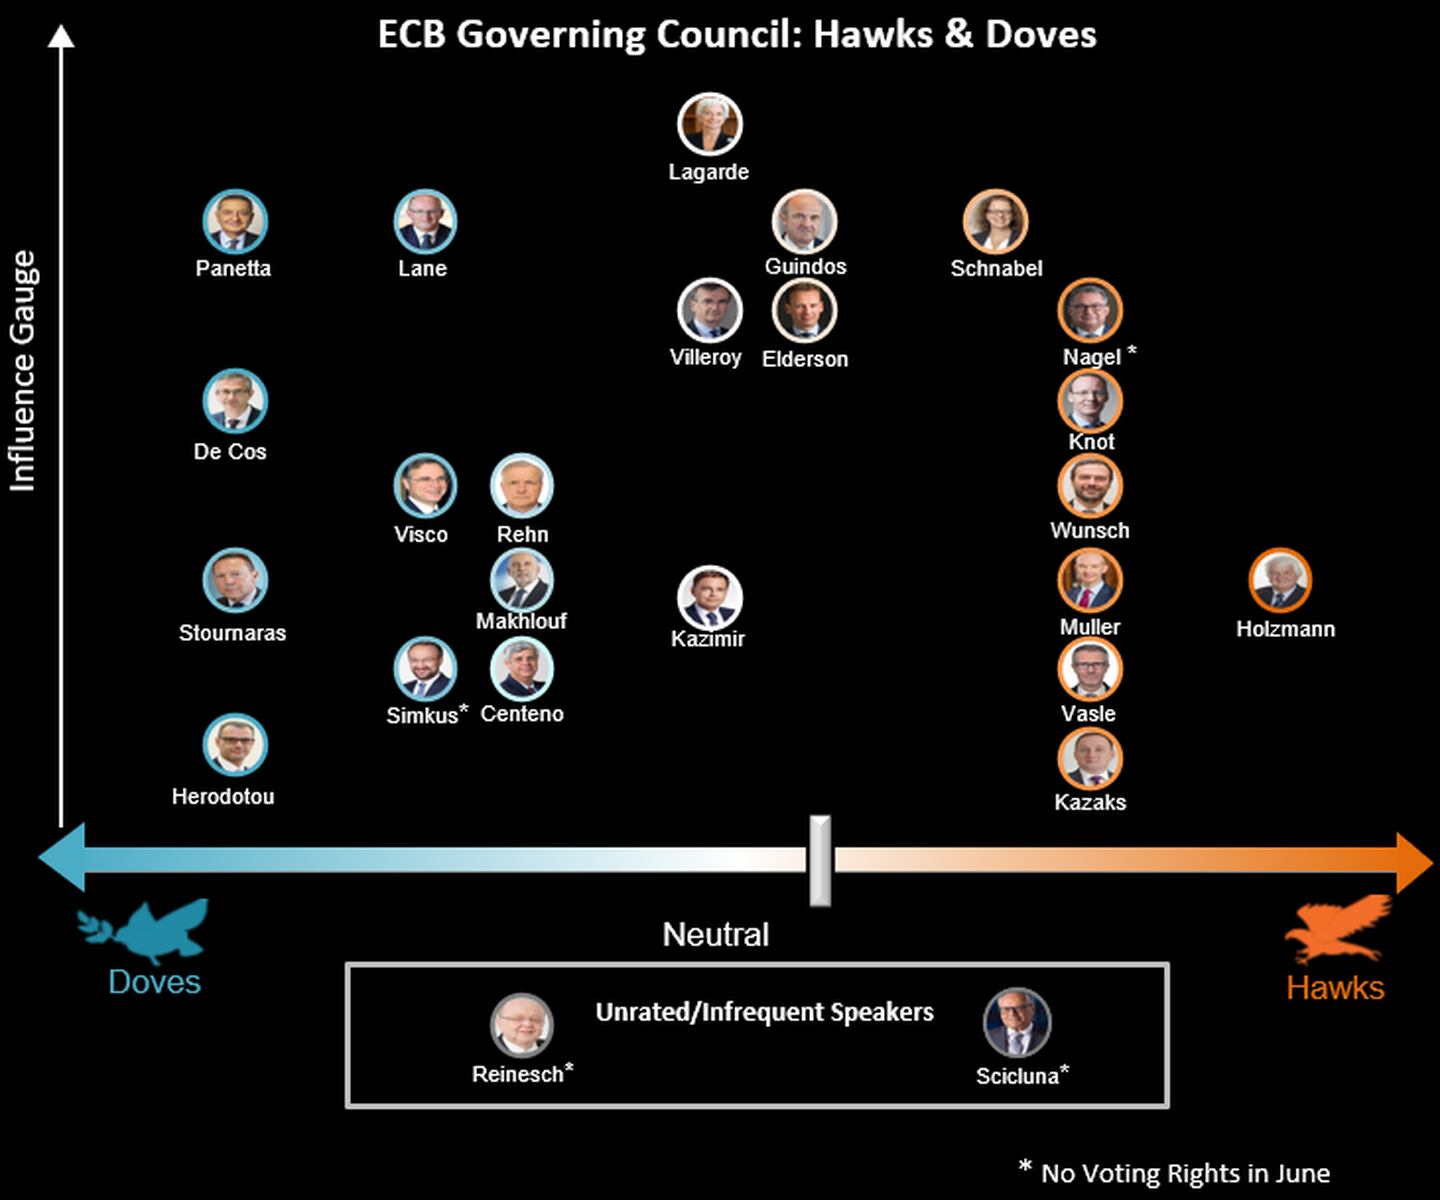 Posturas de miembros del Consejo de Gobierno del BCE.
Doves (partidario de política monetaria expansiva)
Hawks (partidario de política monetaria restrictiva)
hacia arriba: indicador de influencia
Fuente: Economía de Bloombergdfd